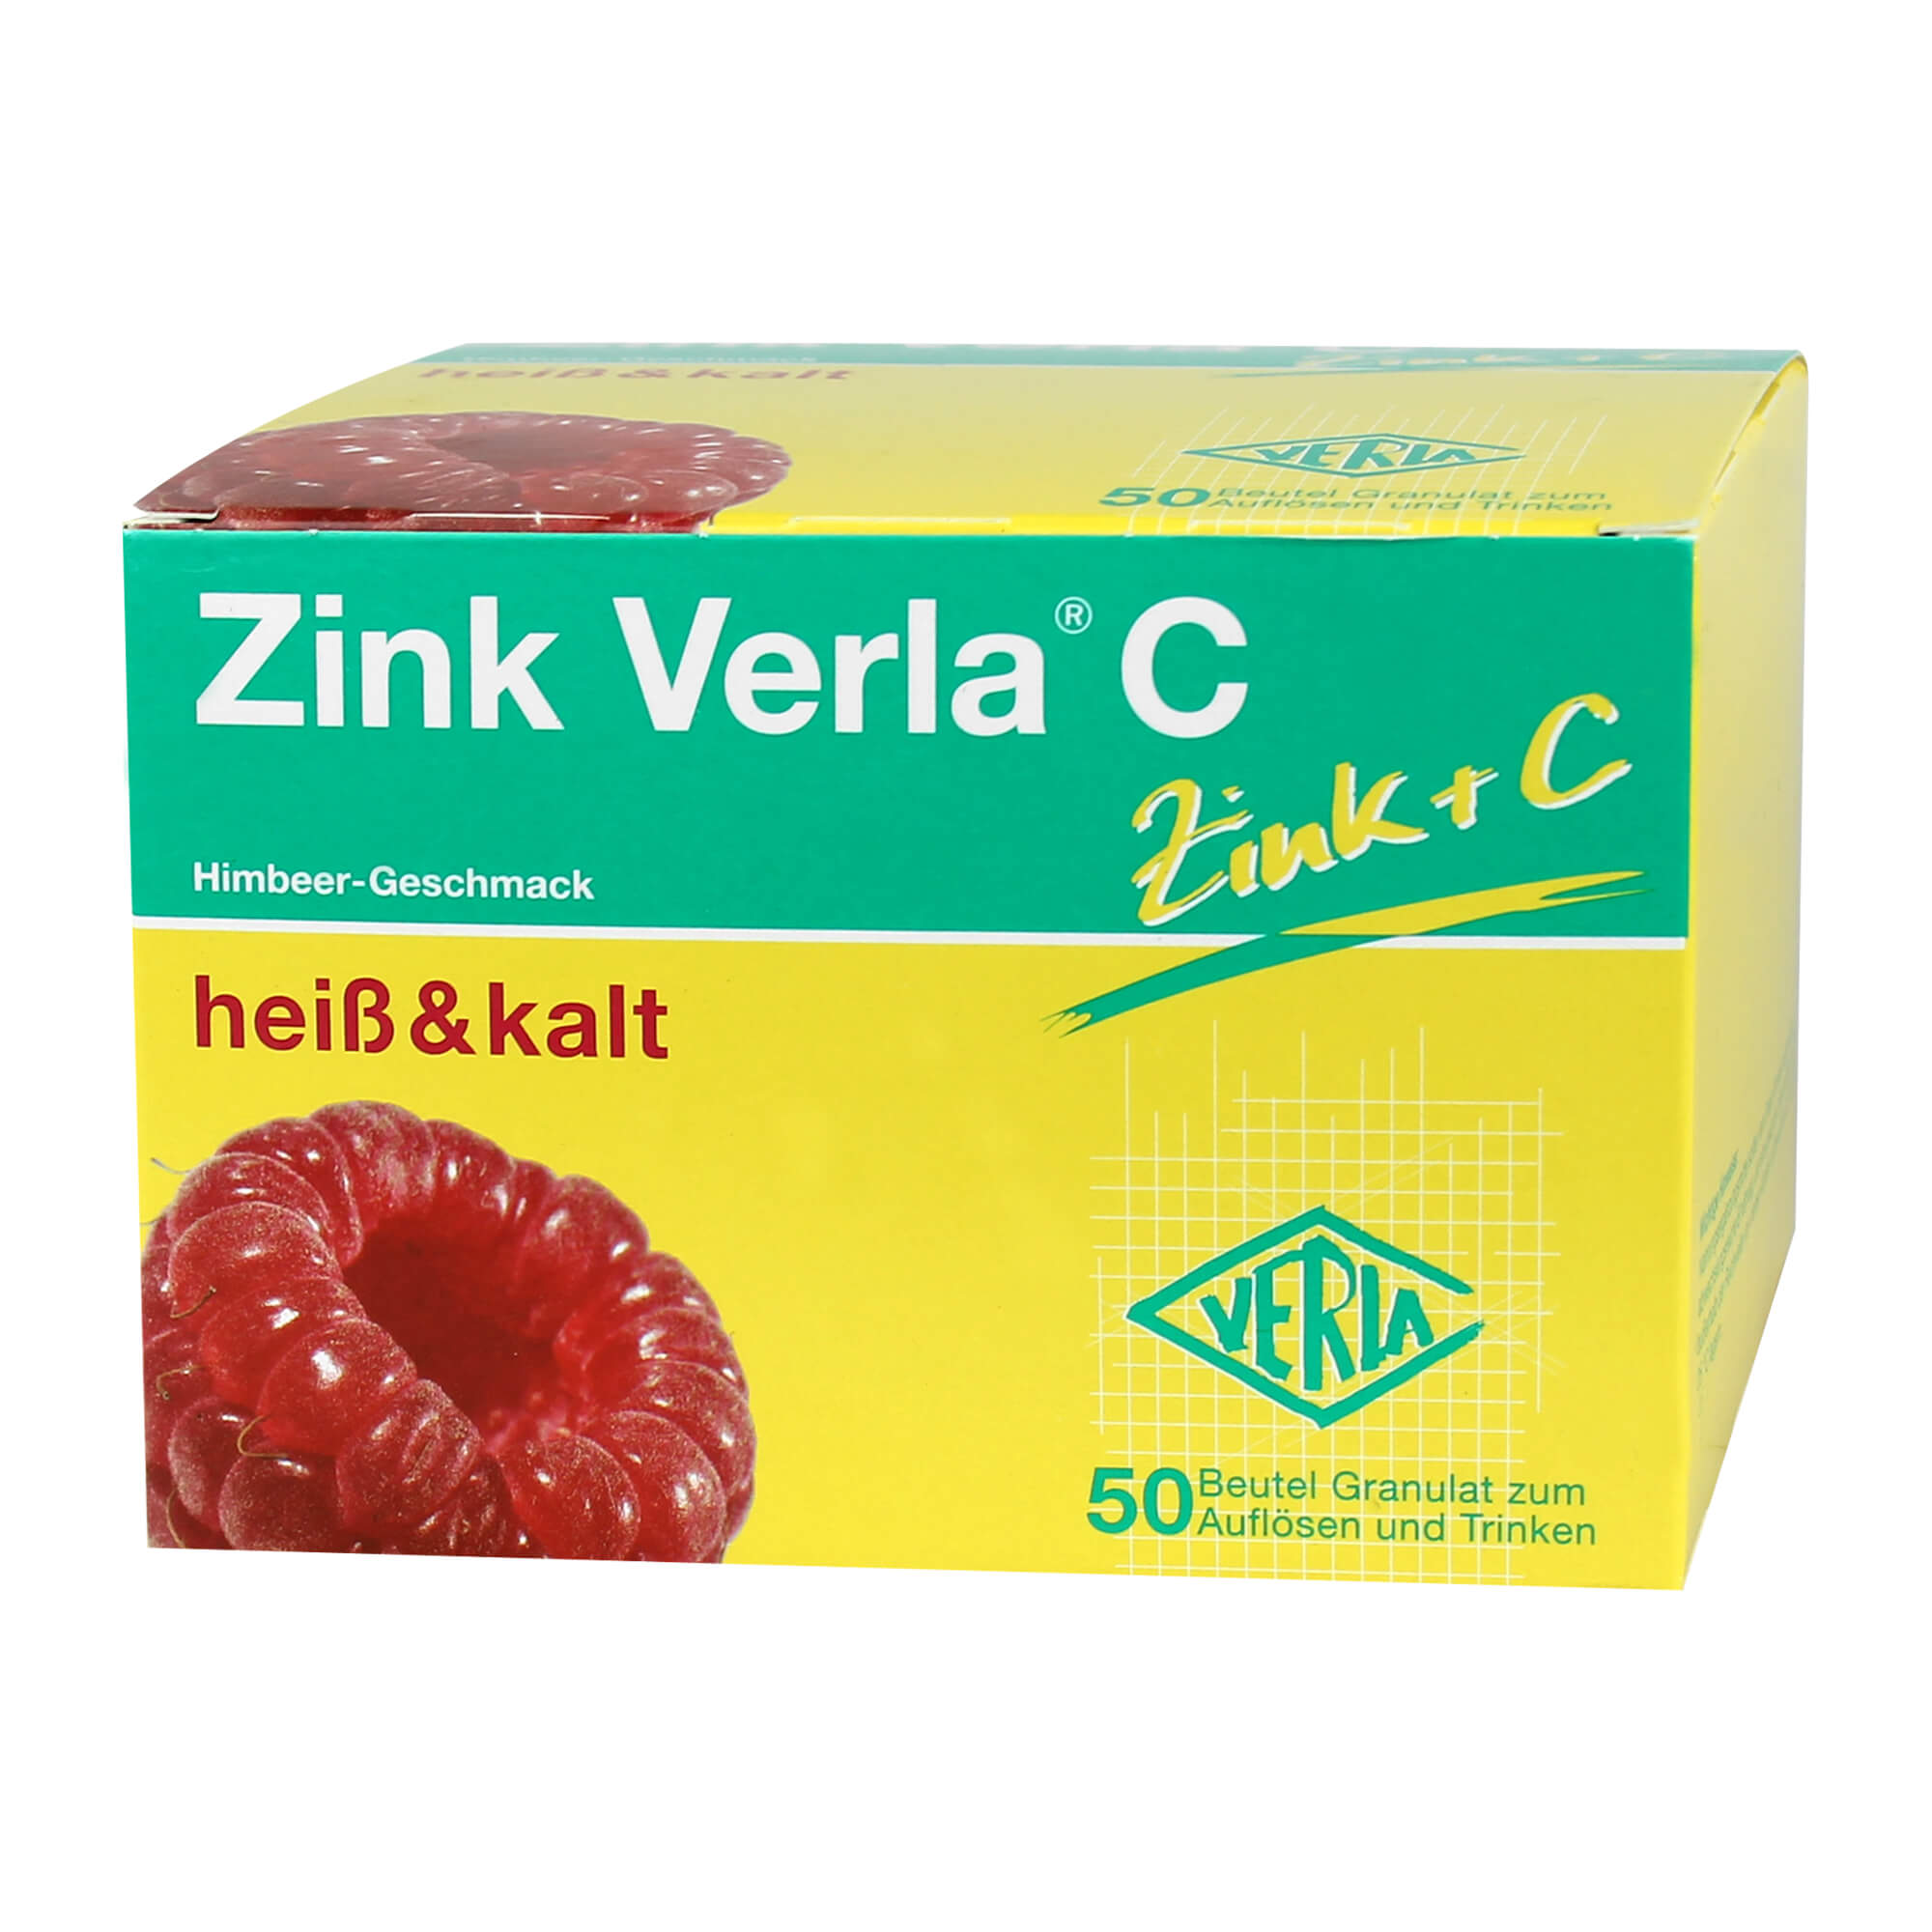 Enthält neben Zink auch Vitamin C. Mit Himbeer-Geschmack.